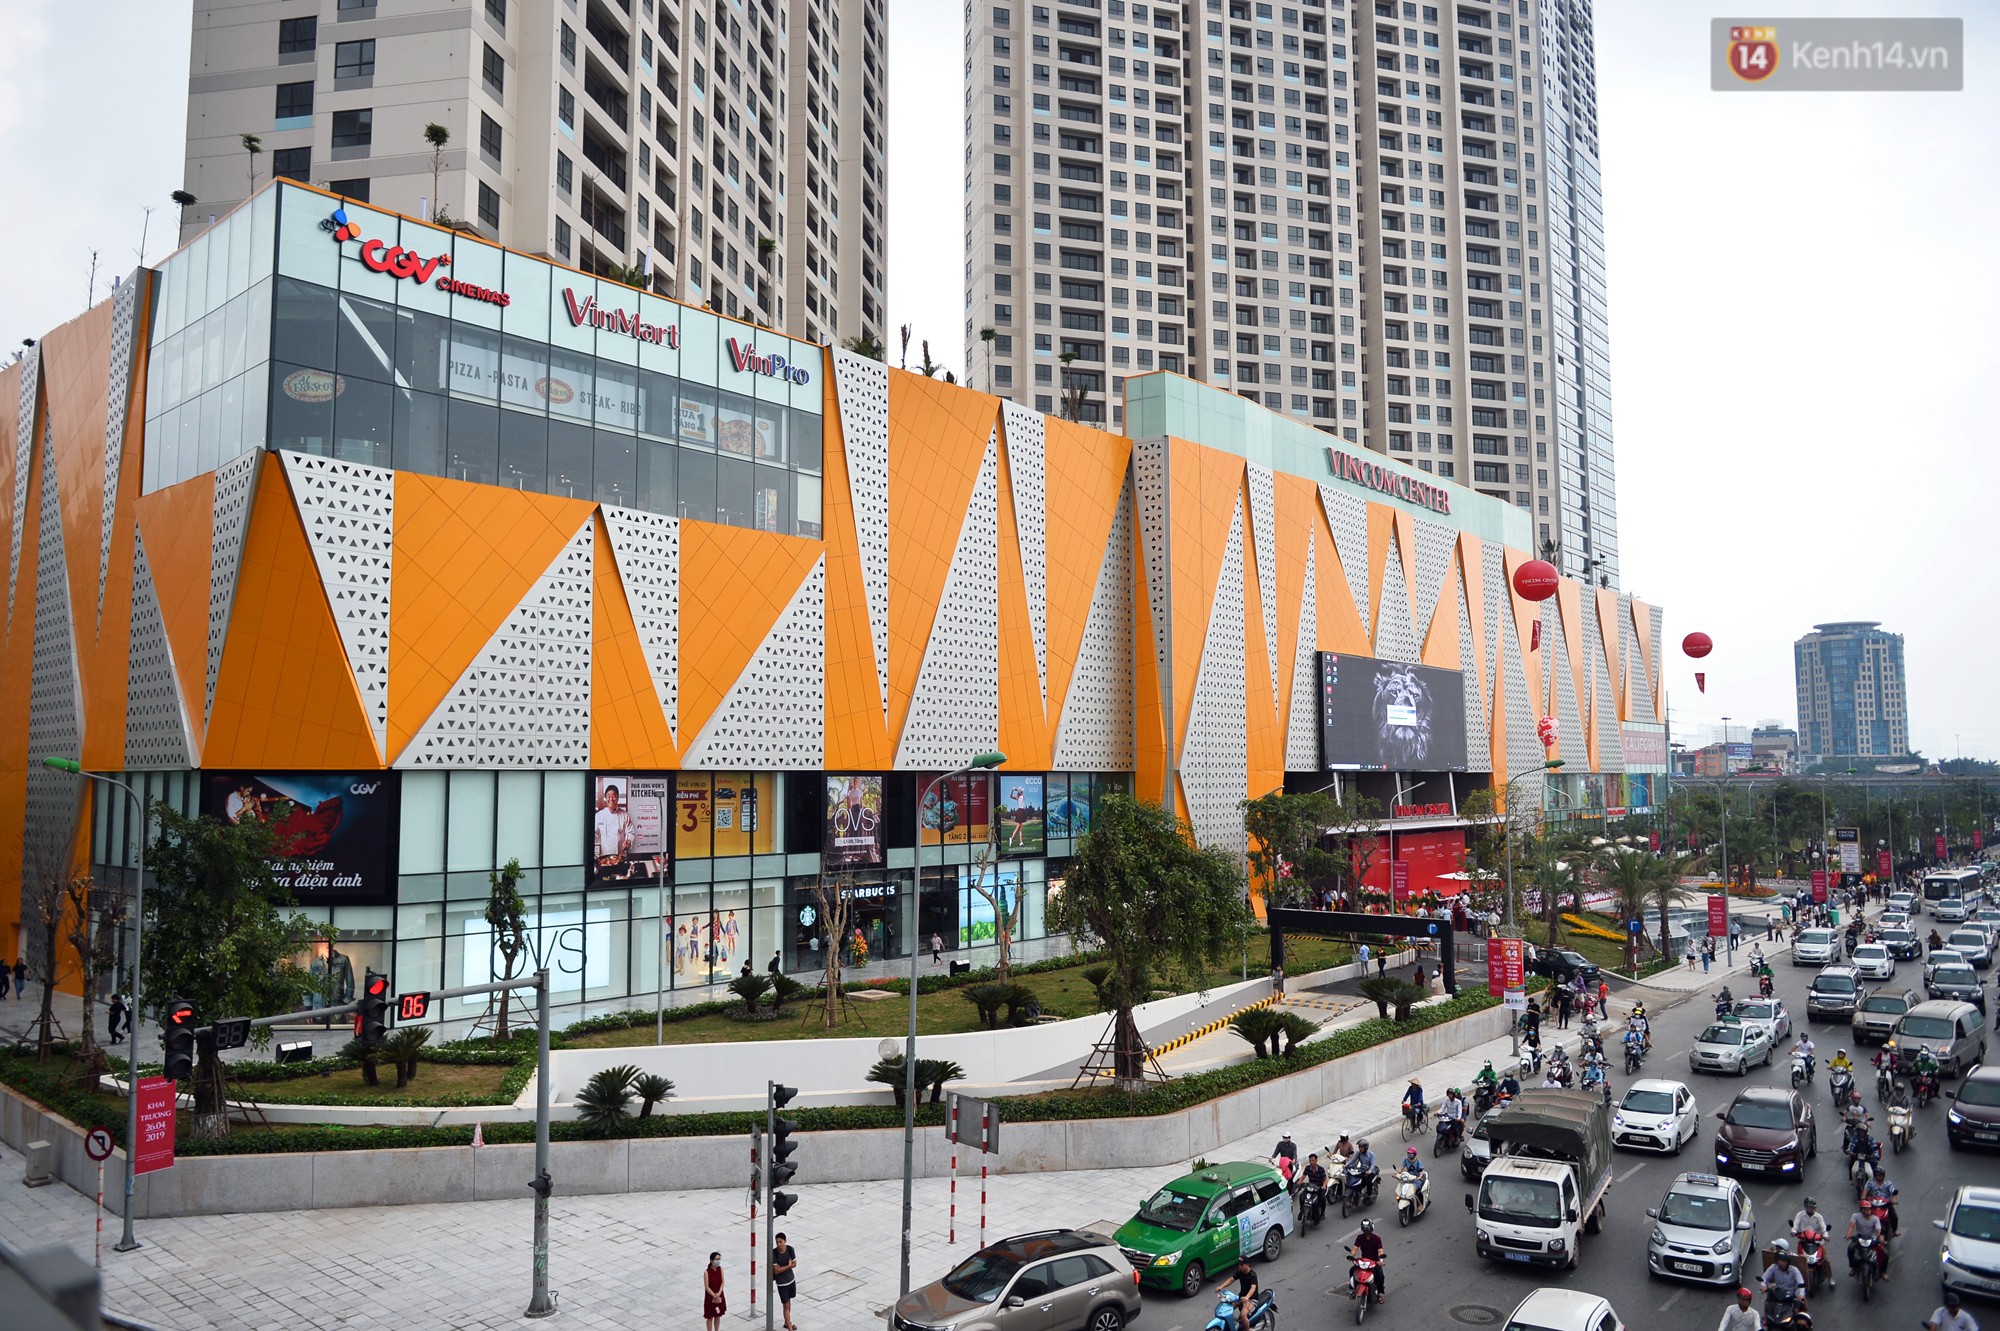 Hà Nội: Chính thức khai trương Vincom Center thứ 10 tại Trần Duy Hưng - Ảnh 6.